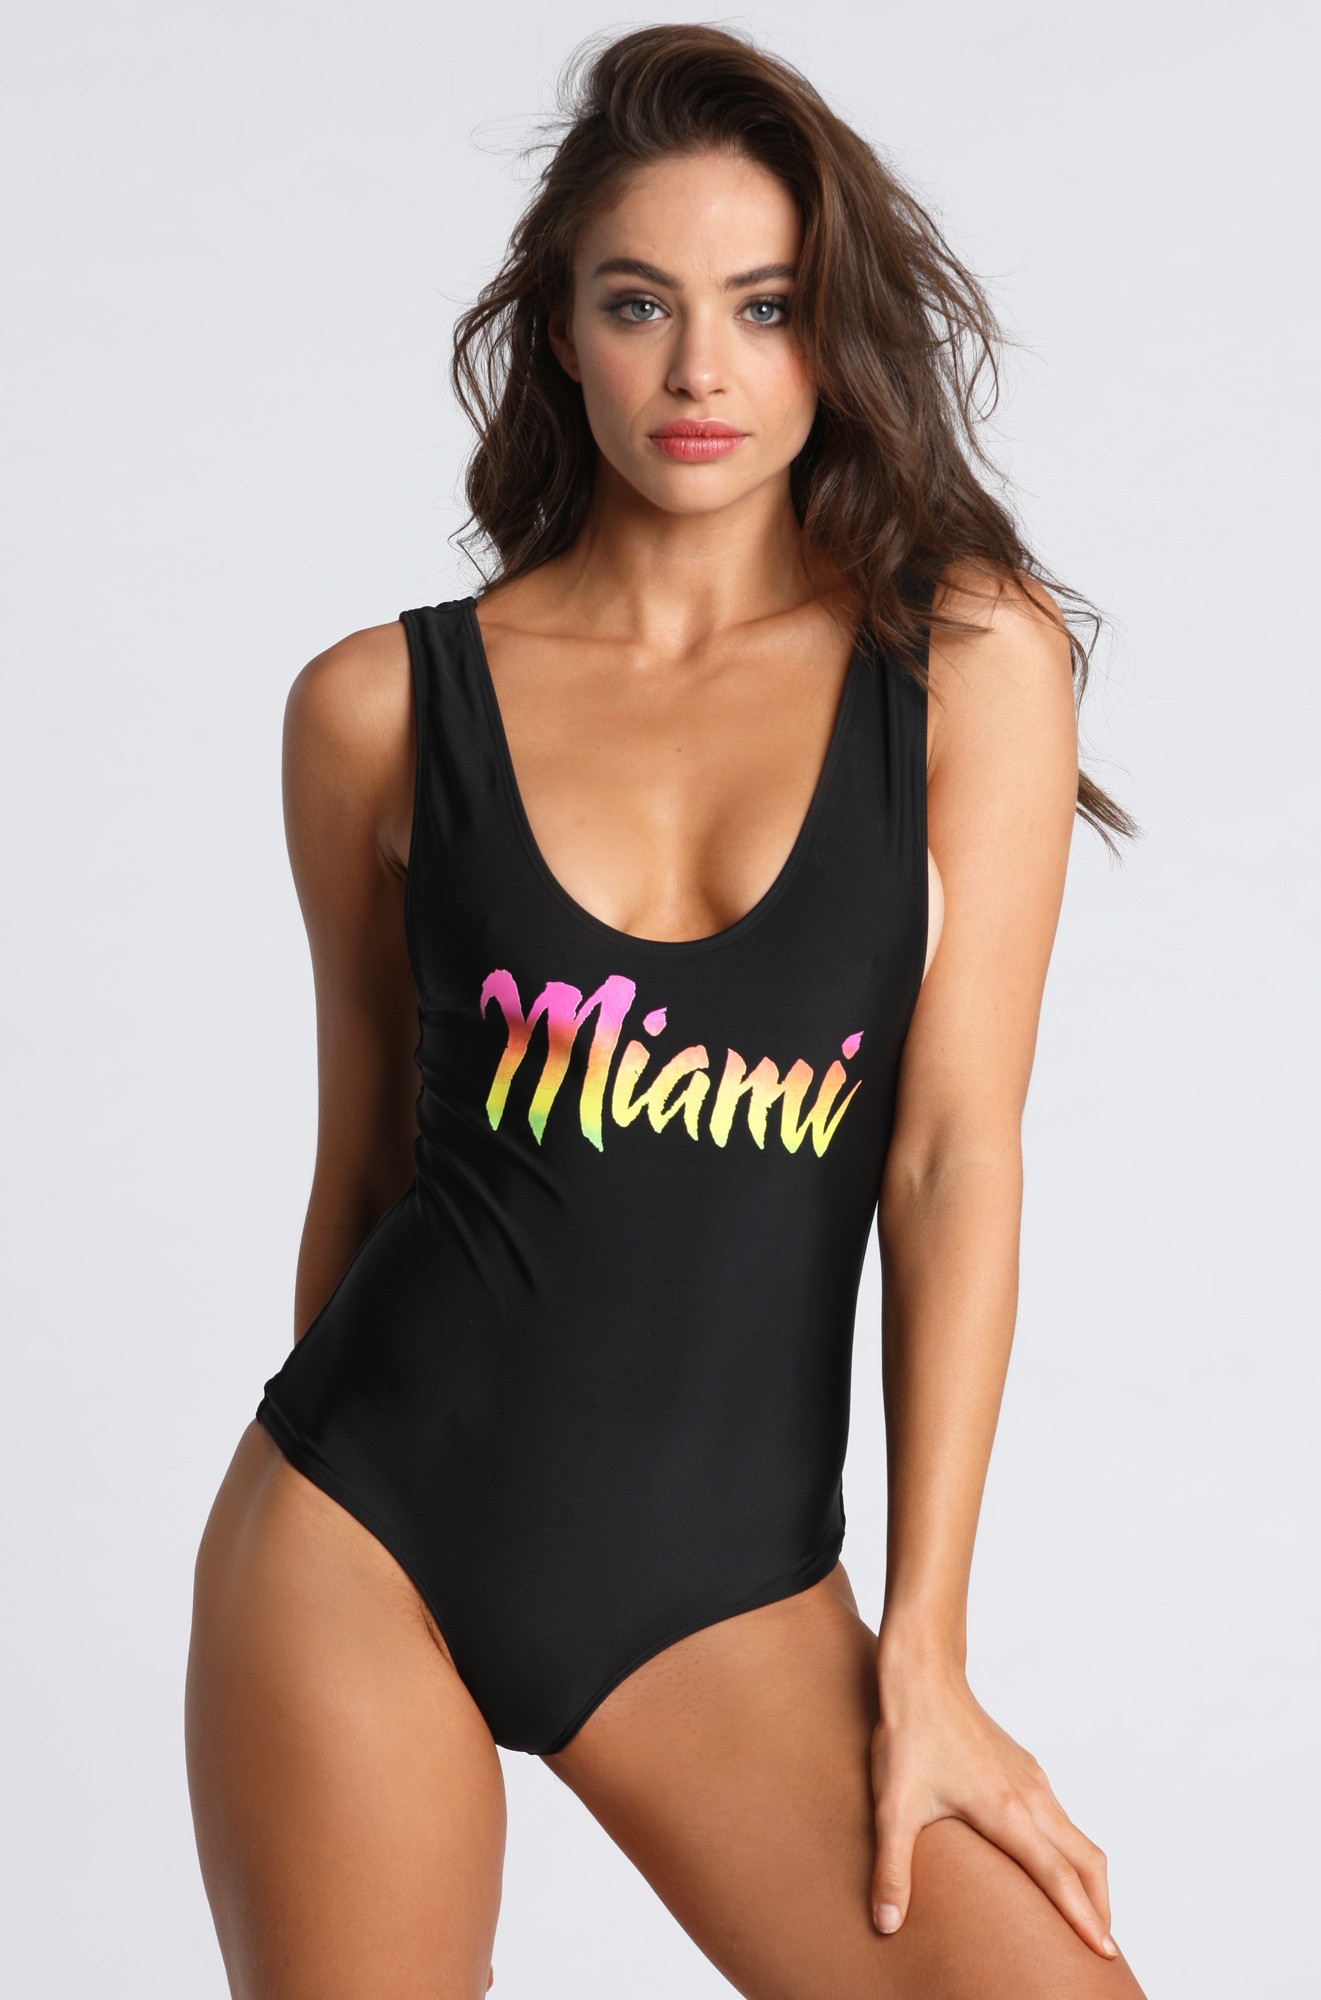 nicole-meyer-ishine365-swimwear-collection-2015-10.jpg